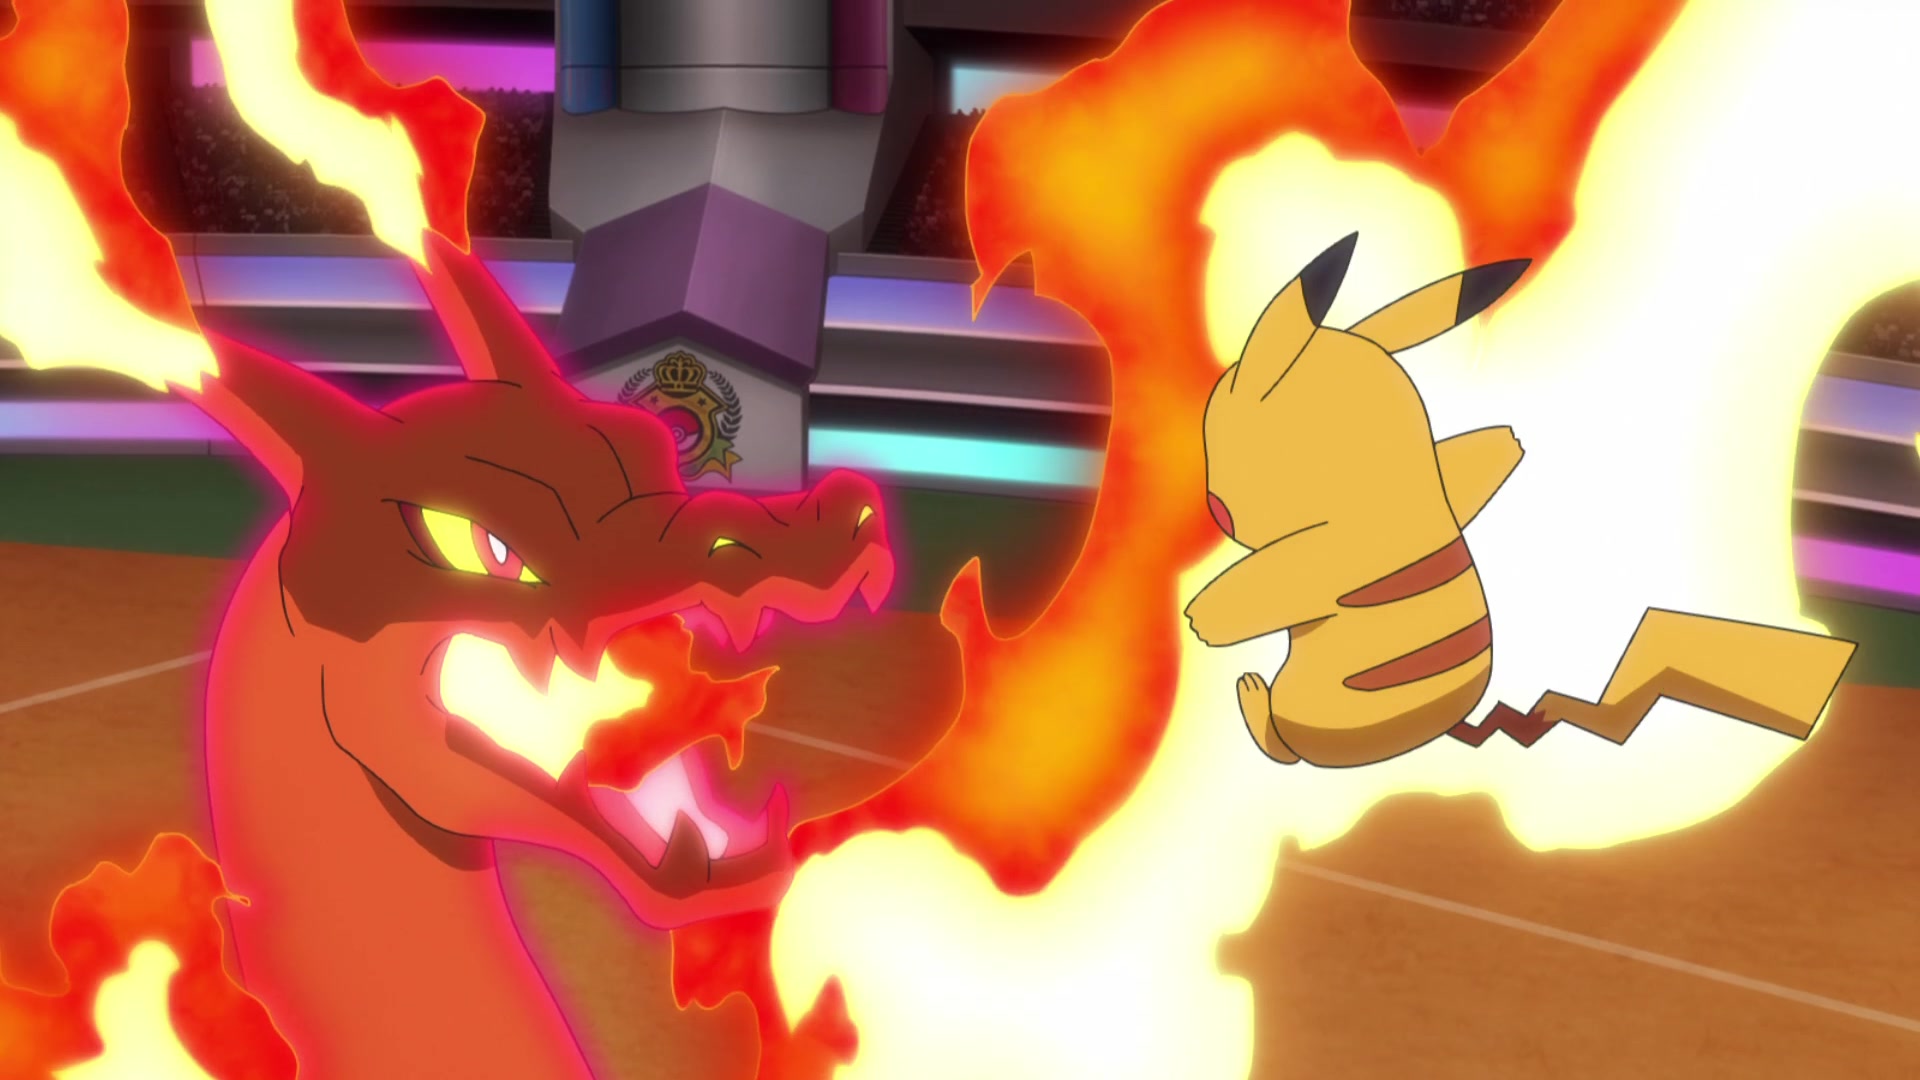 Episodio 131 Viajes Pokémon Charizard Gigamax de Lionel contra Pikachu de Ash